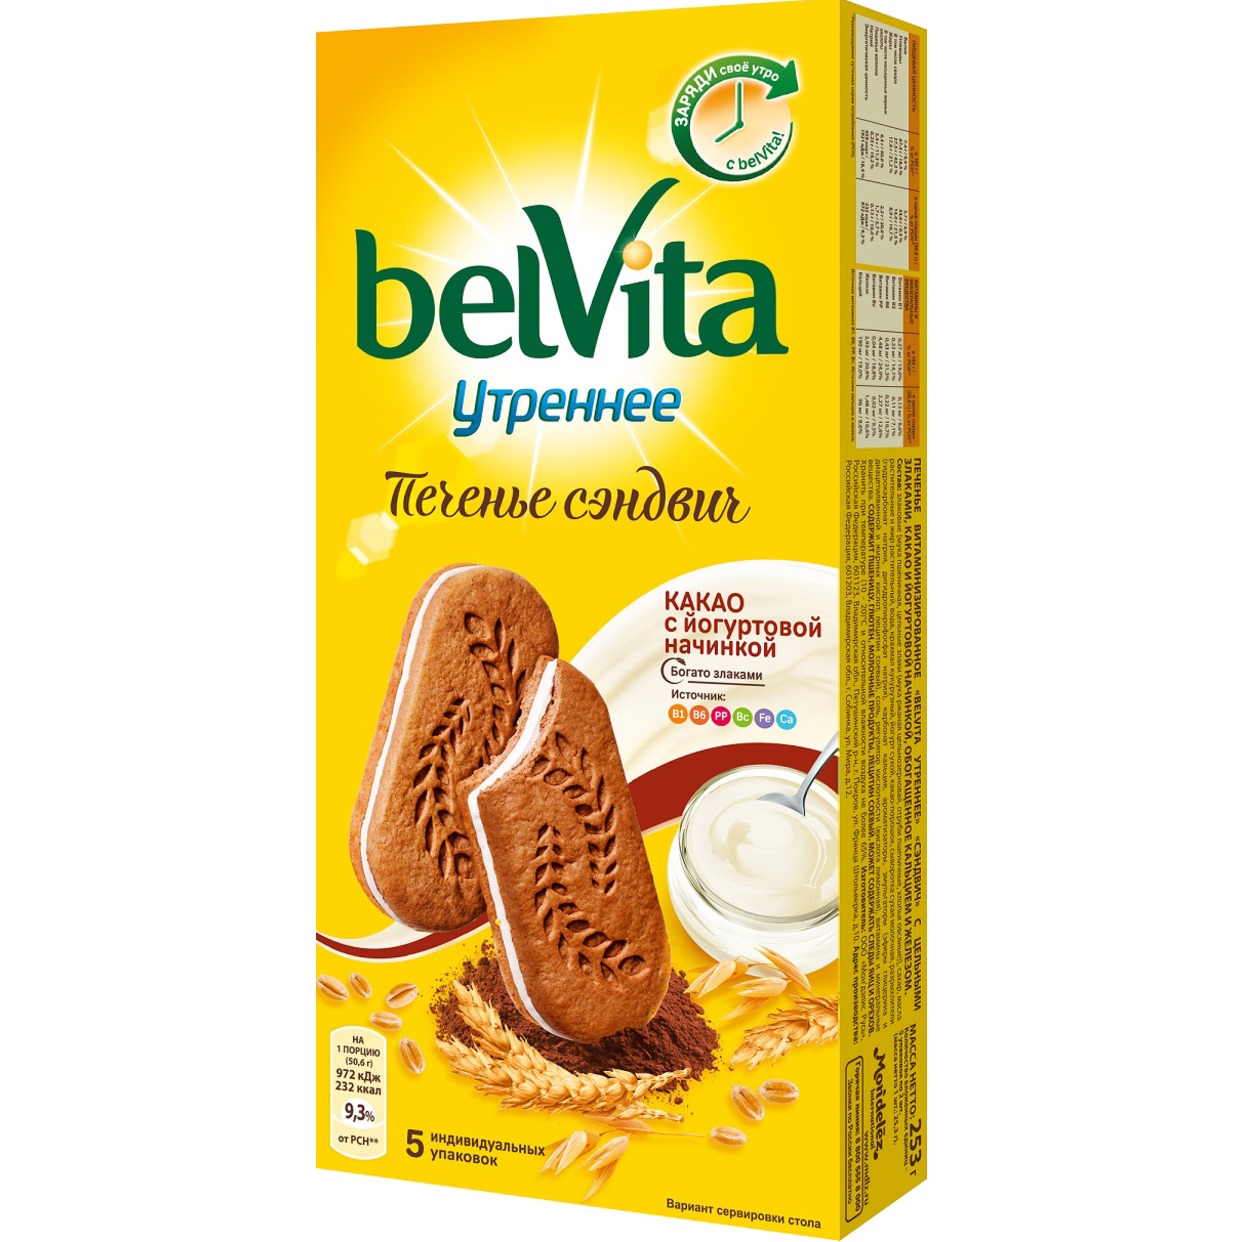 Печенье Belvita Утреннее со злаками какао и йогуртовой начинкой 253г по акции в Пятерочке